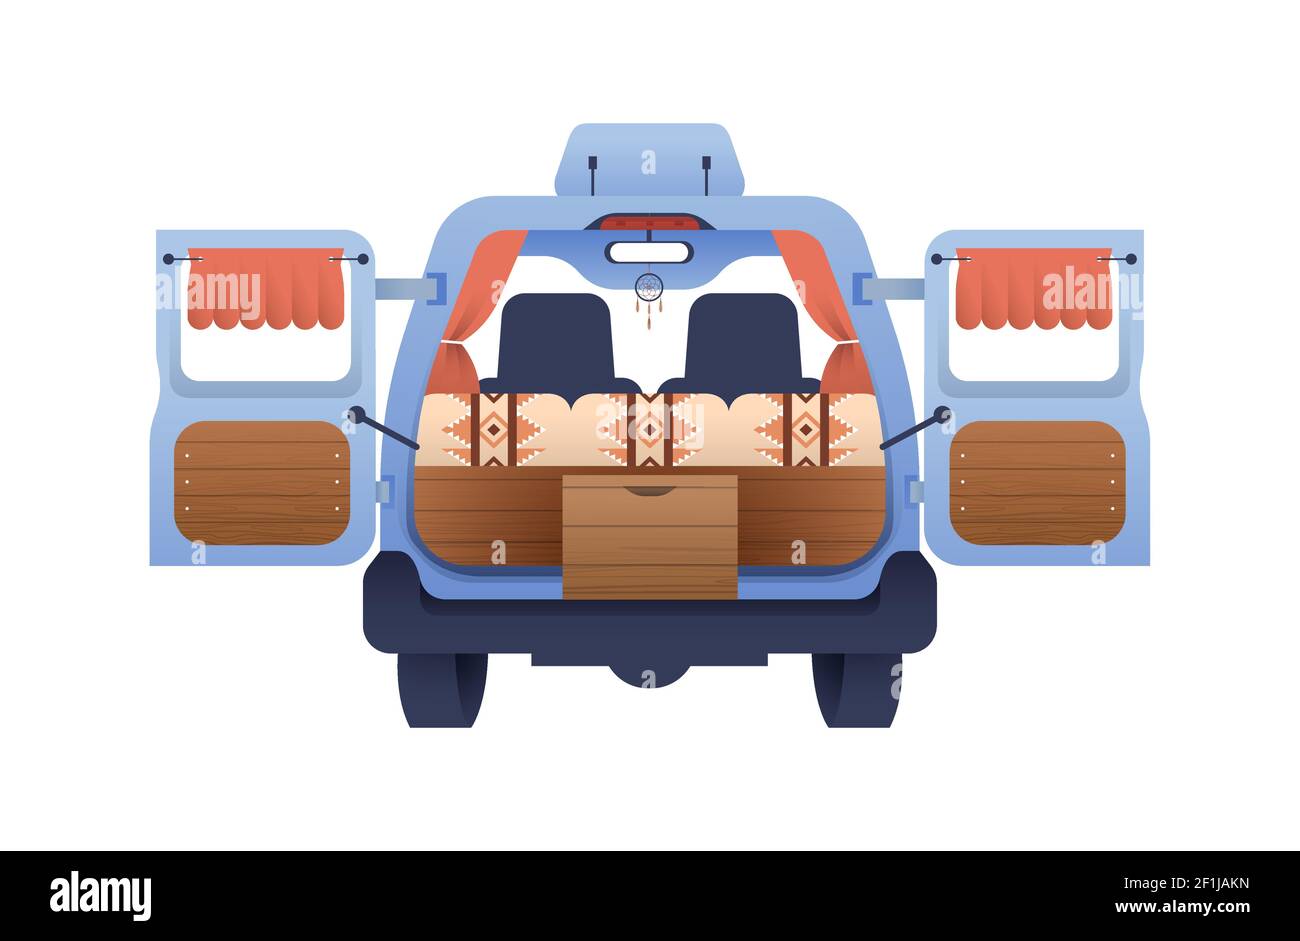 Rückansicht von Wohnmobil, Wohnmobil RV Fahrzeug auf isoliertem weißen Hintergrund. Moderne flache Cartoon-Illustration für Outdoor-Camping-Abenteuer oder Zinn Stock Vektor